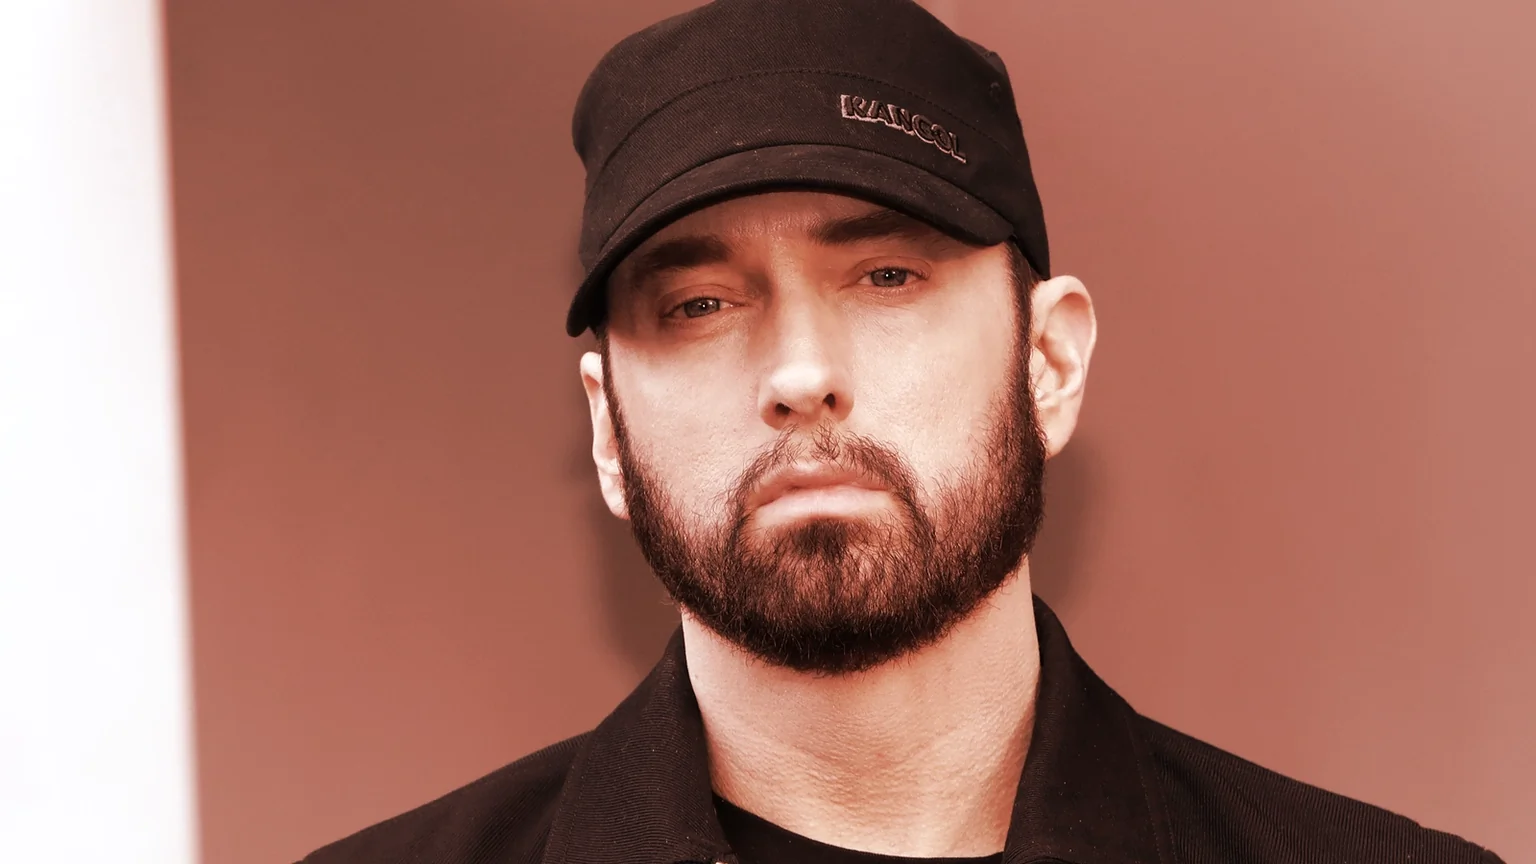 Rapper Eminem. Image: Shutterstock